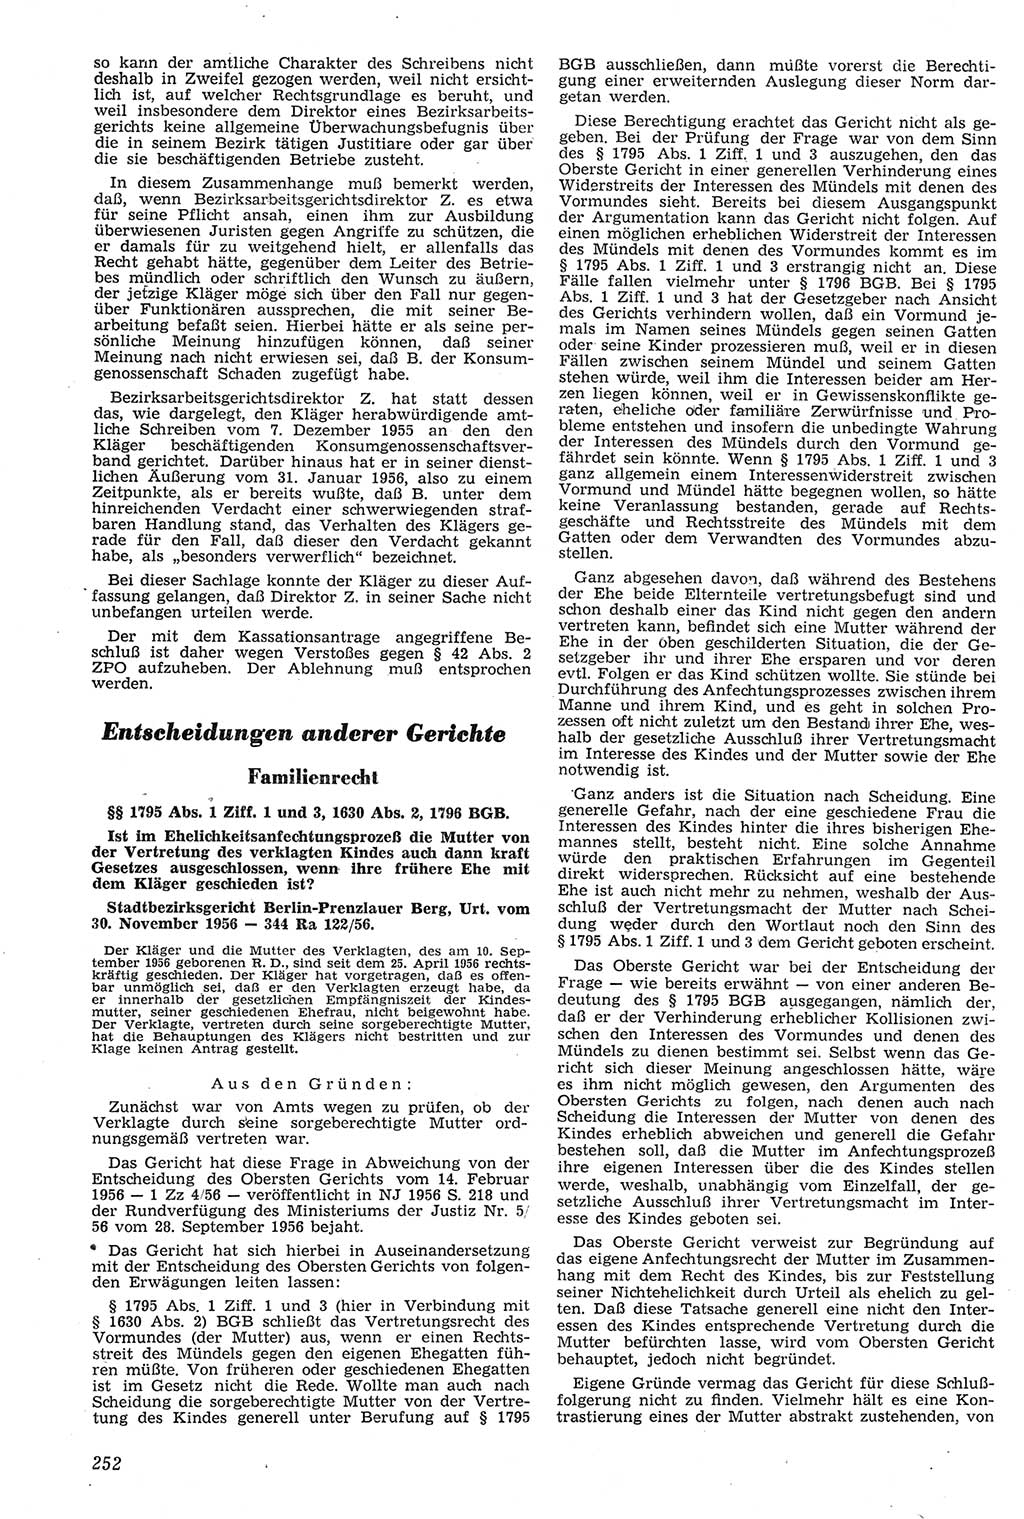 Neue Justiz (NJ), Zeitschrift für Recht und Rechtswissenschaft [Deutsche Demokratische Republik (DDR)], 11. Jahrgang 1957, Seite 252 (NJ DDR 1957, S. 252)